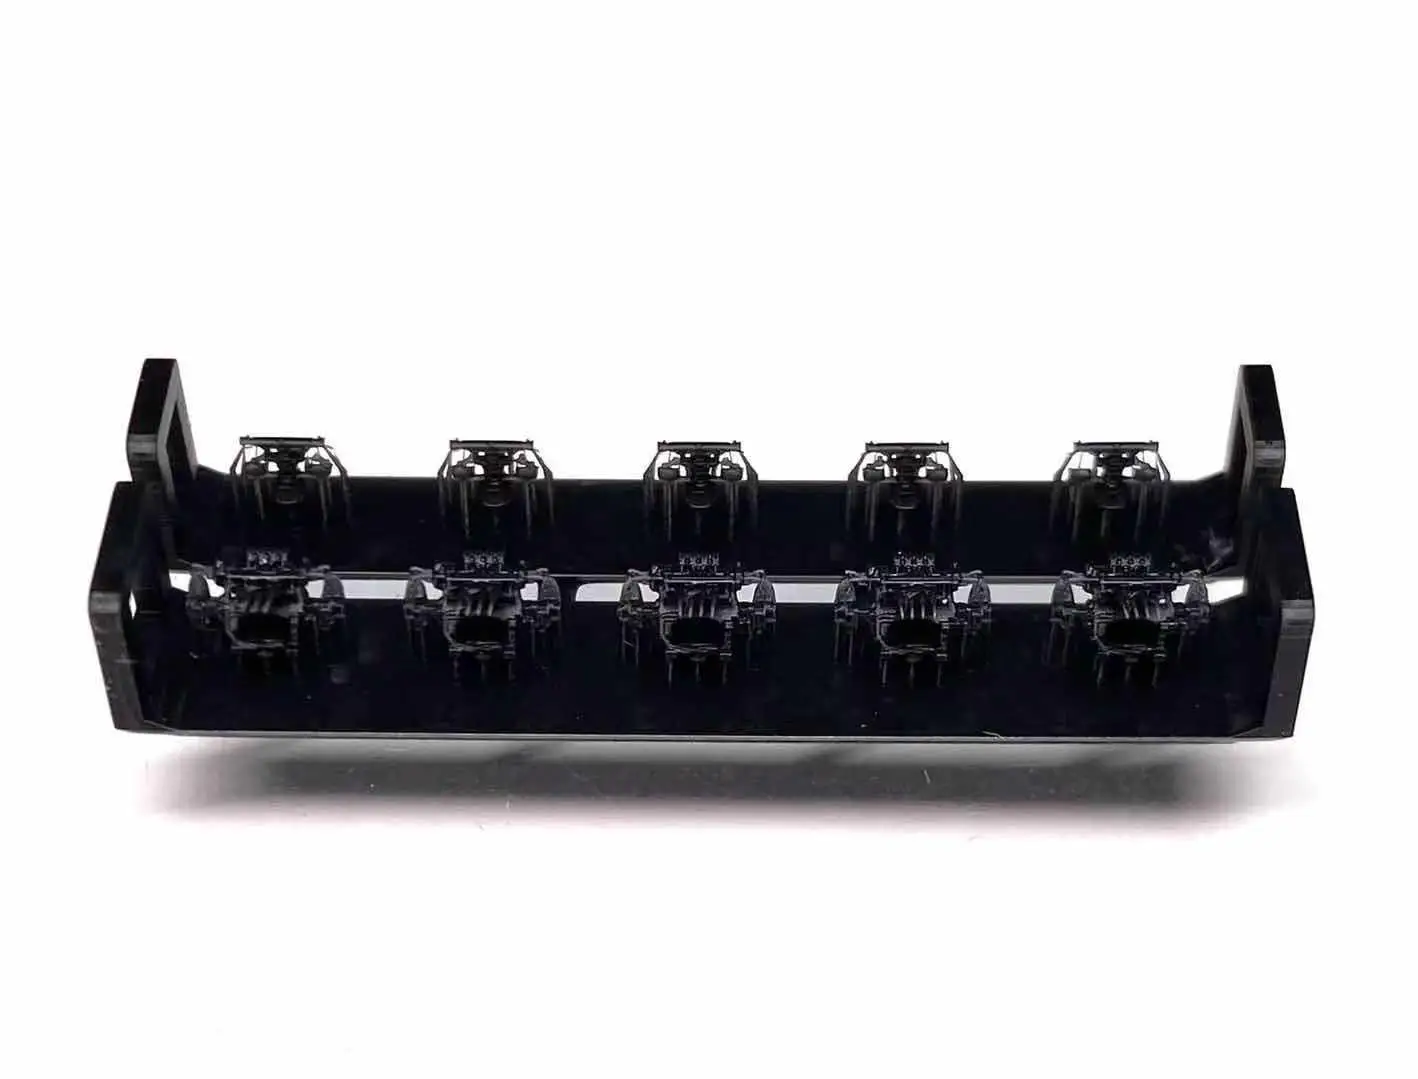 BUNKER WS70034 USN 1.1 Quad AA Guns (с MK Director) Набор для 3D-печати - 1